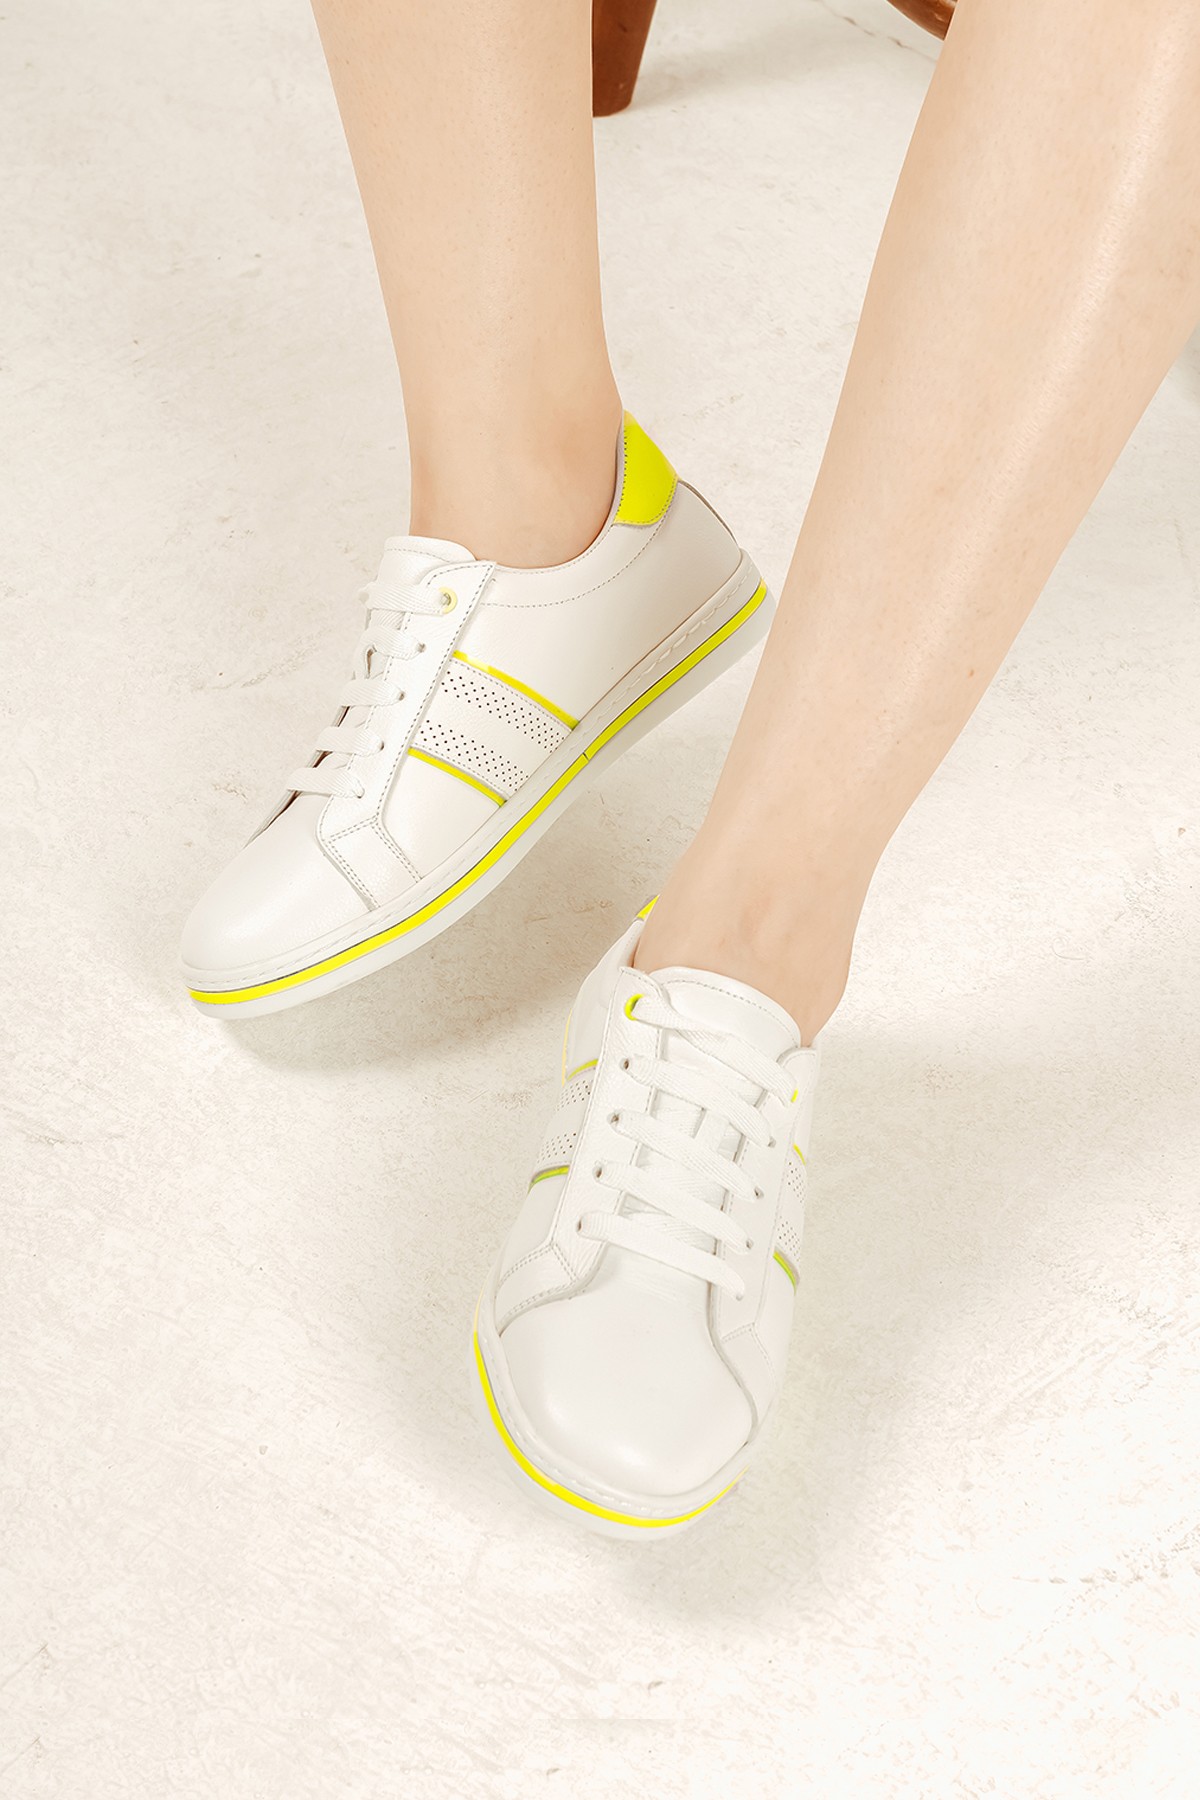 Cooliza Hakiki Deri Bağcıklı Renkli Rahat Kadın Günlük Yürüyüş Spor Ayakkabı - Beyaz-Neon Sarı